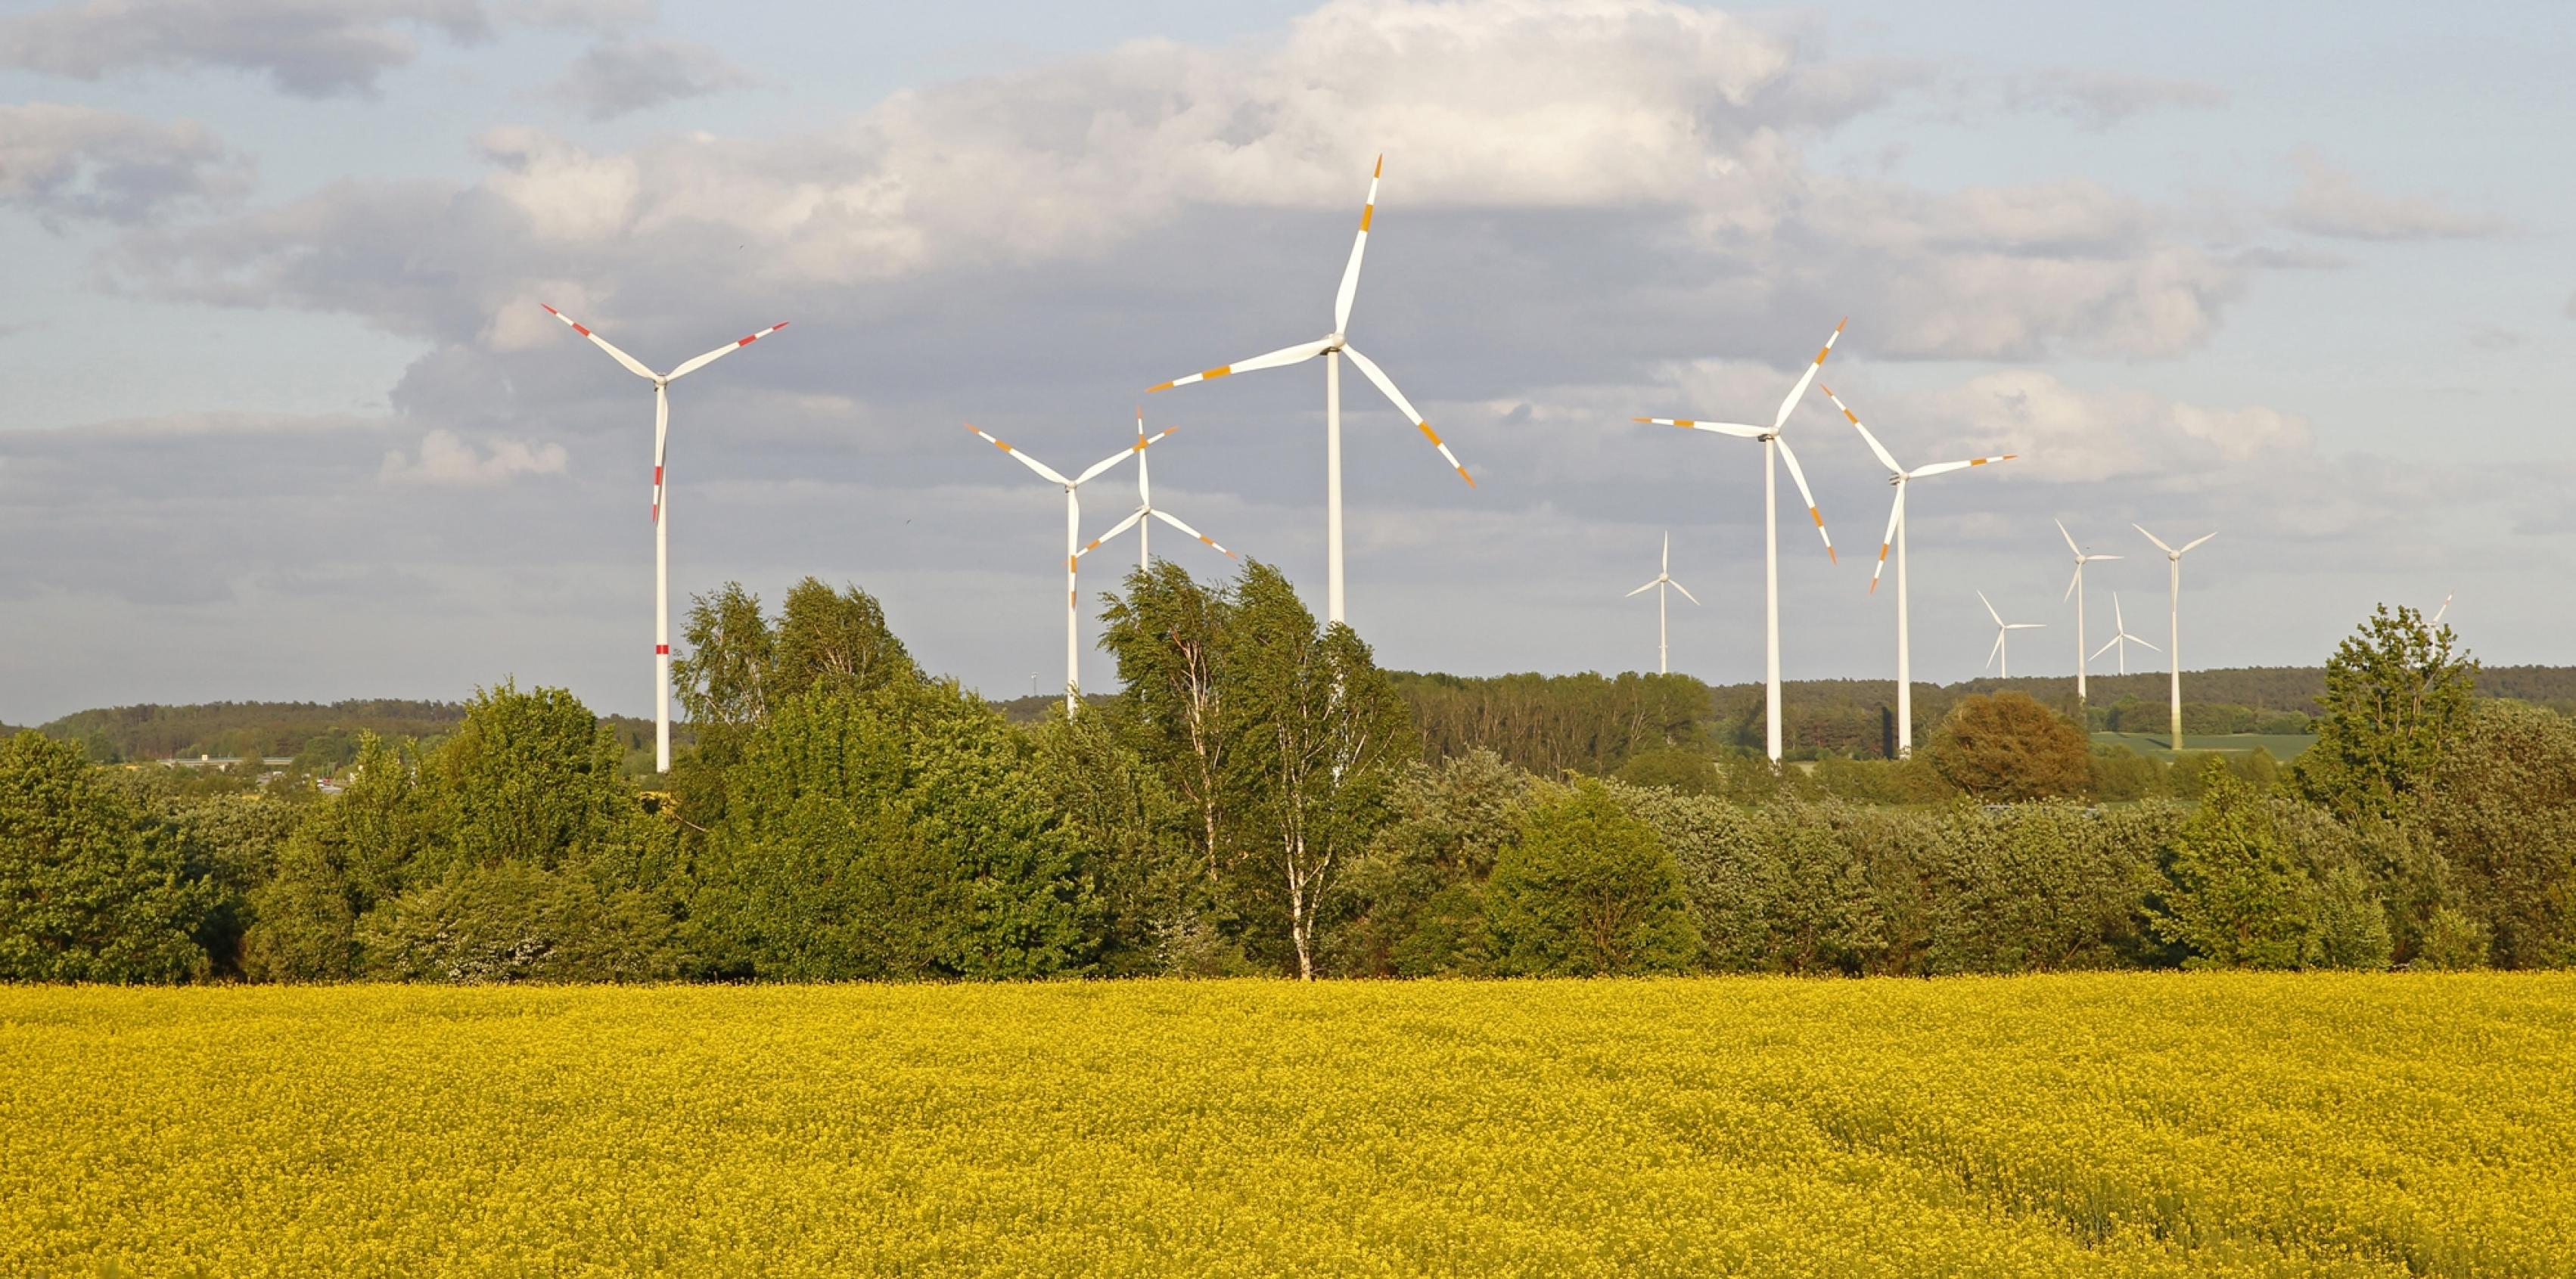 Das Bild zeigt Windräder als Teil eines ganzen Parks solcher Anlagen in einer Agrarlandschaft mit Rapsfeld.